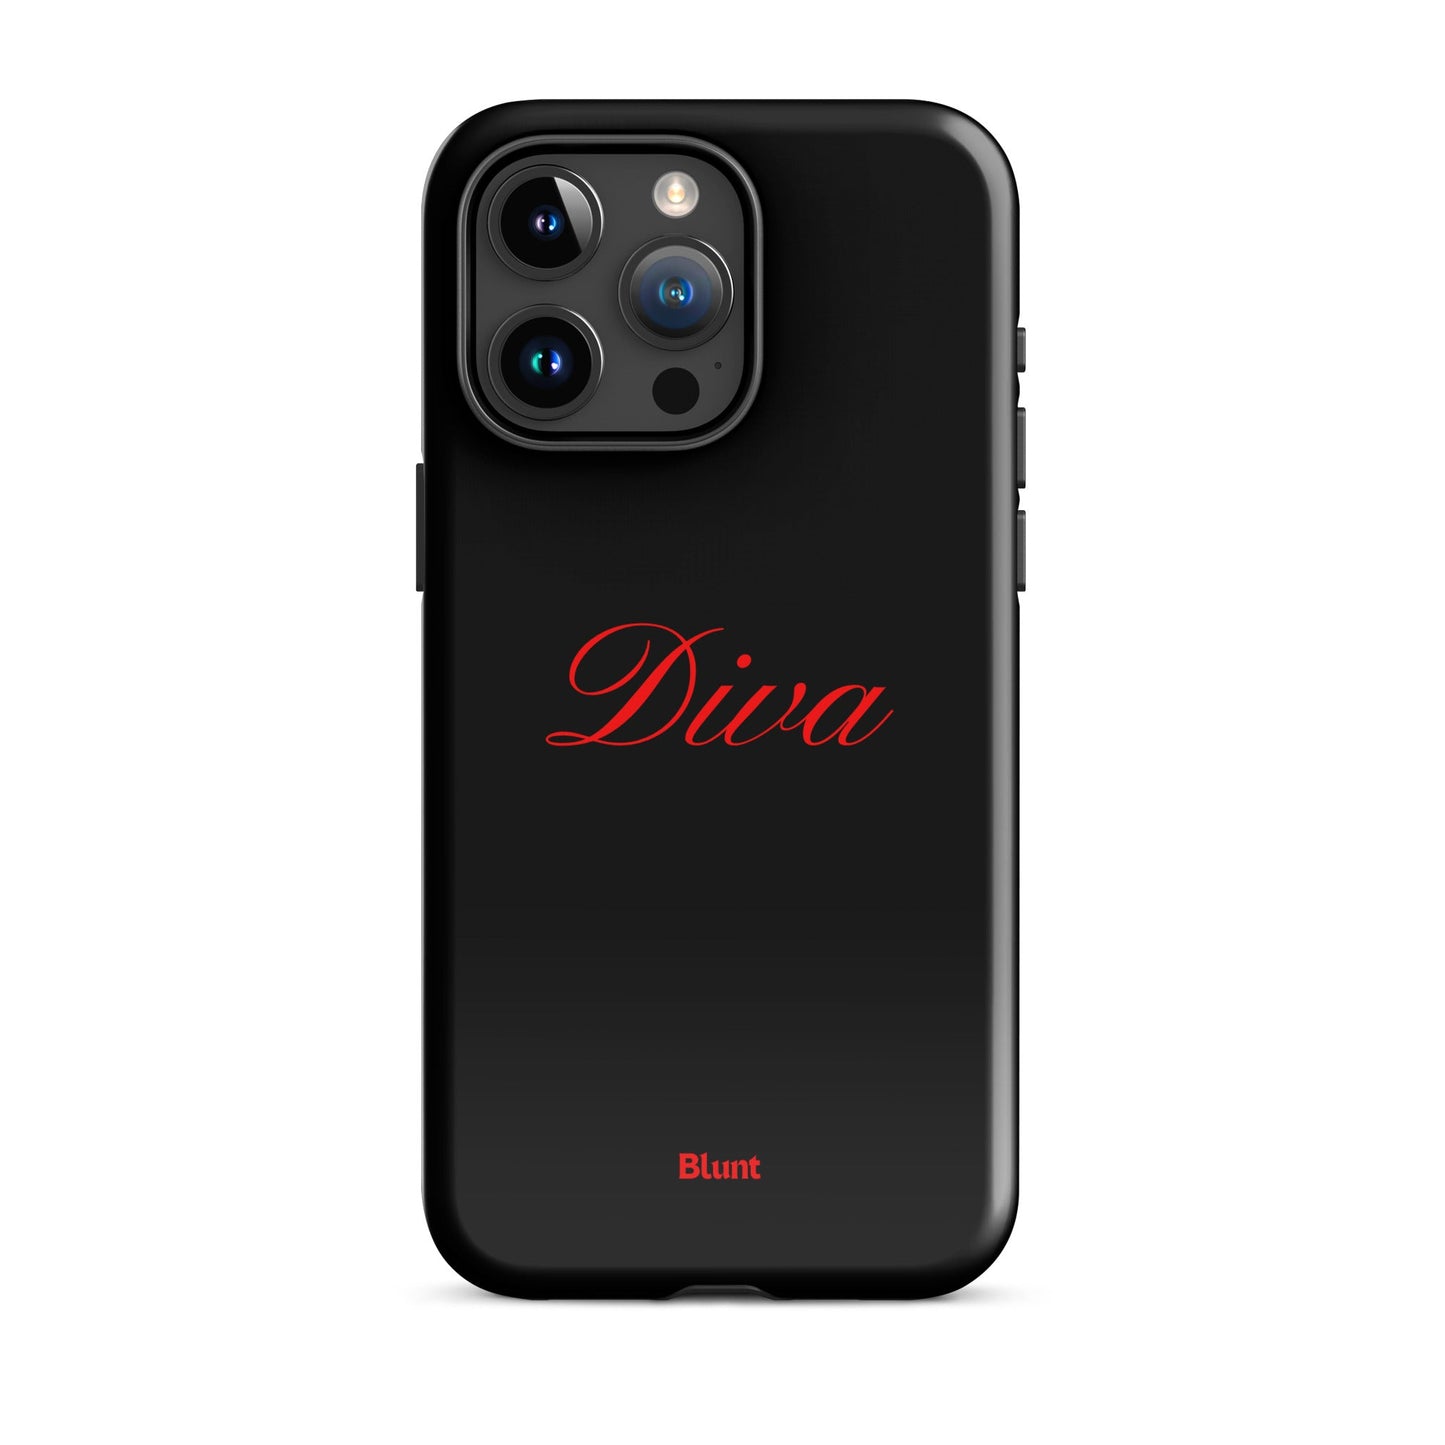 Diva iPhone Case - blunt cases